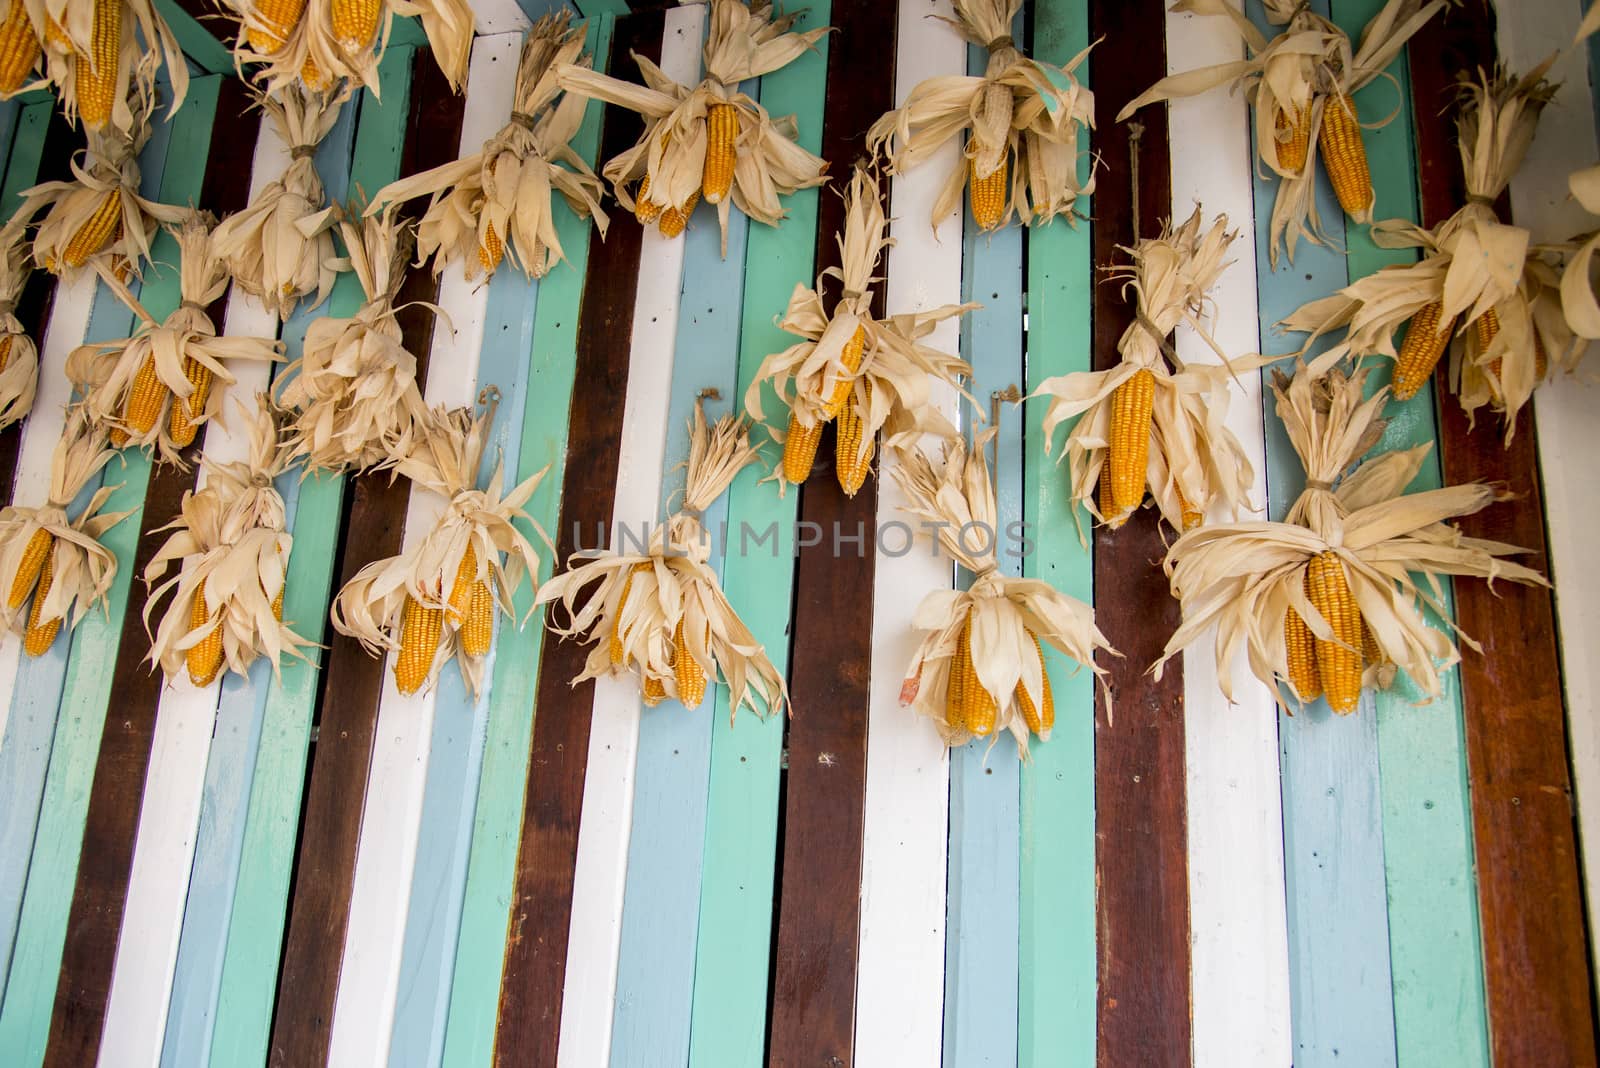 A lot of dry corns on wooden wall2 by gjeerawut